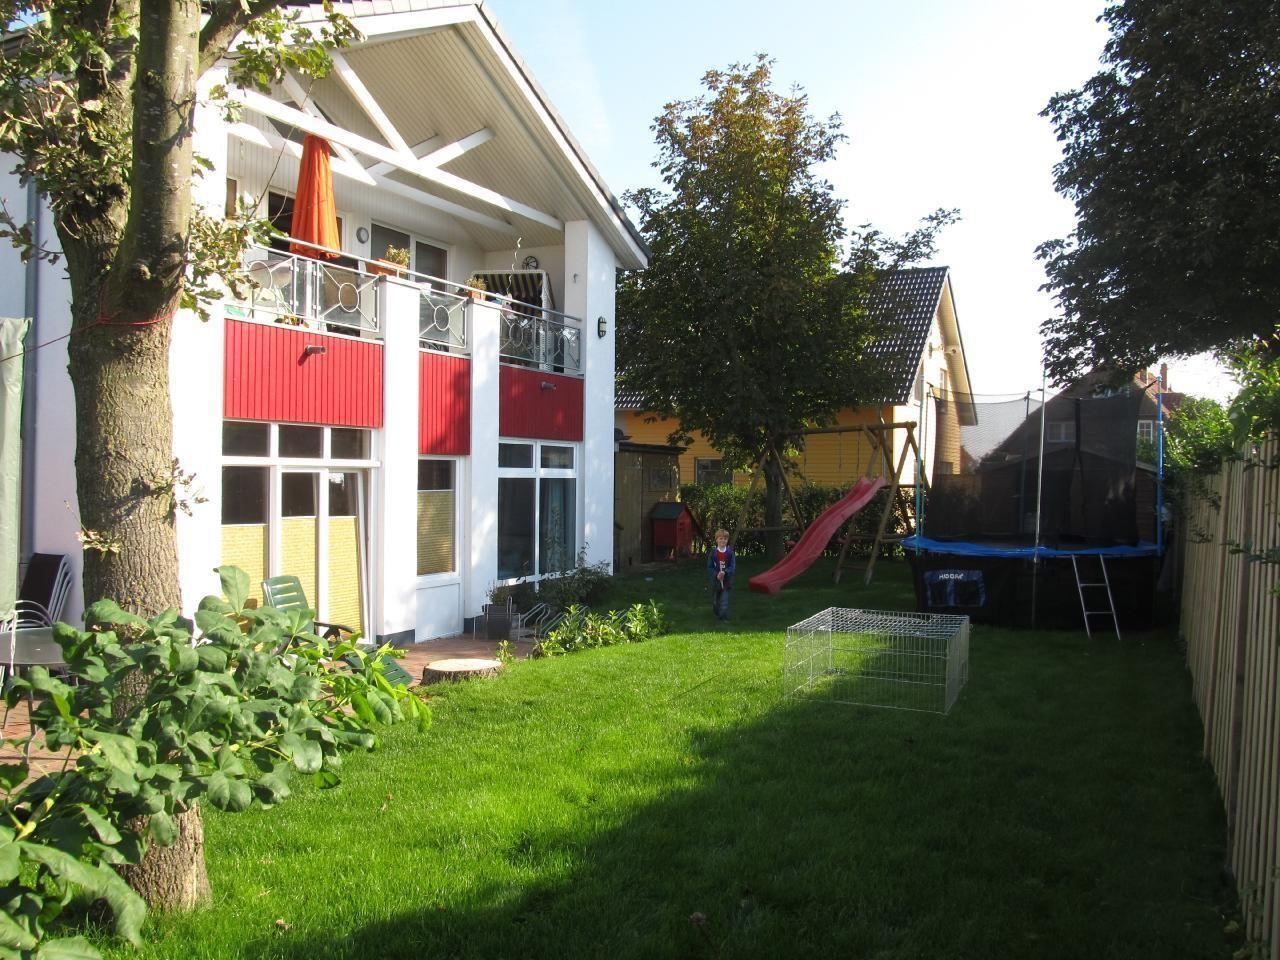 Appartement in Wulfen mit Garten, Grill und Terras   Holsteinische Ostseeküste